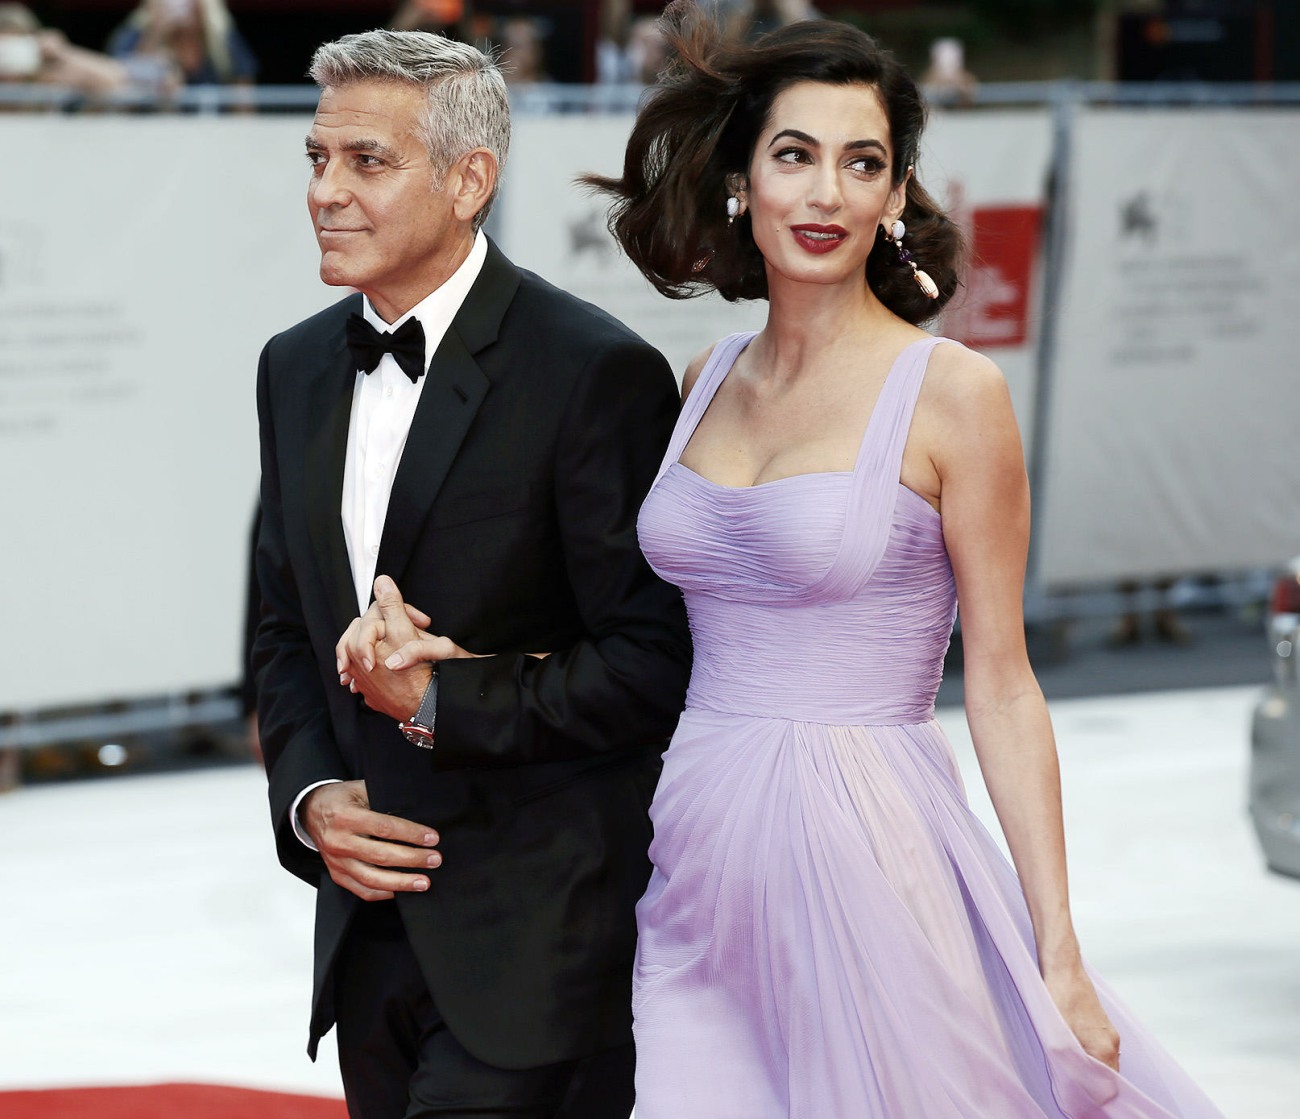 E !: Амаль Клуни возвращается на работу на этой неделе, у нее смешанные эмоции